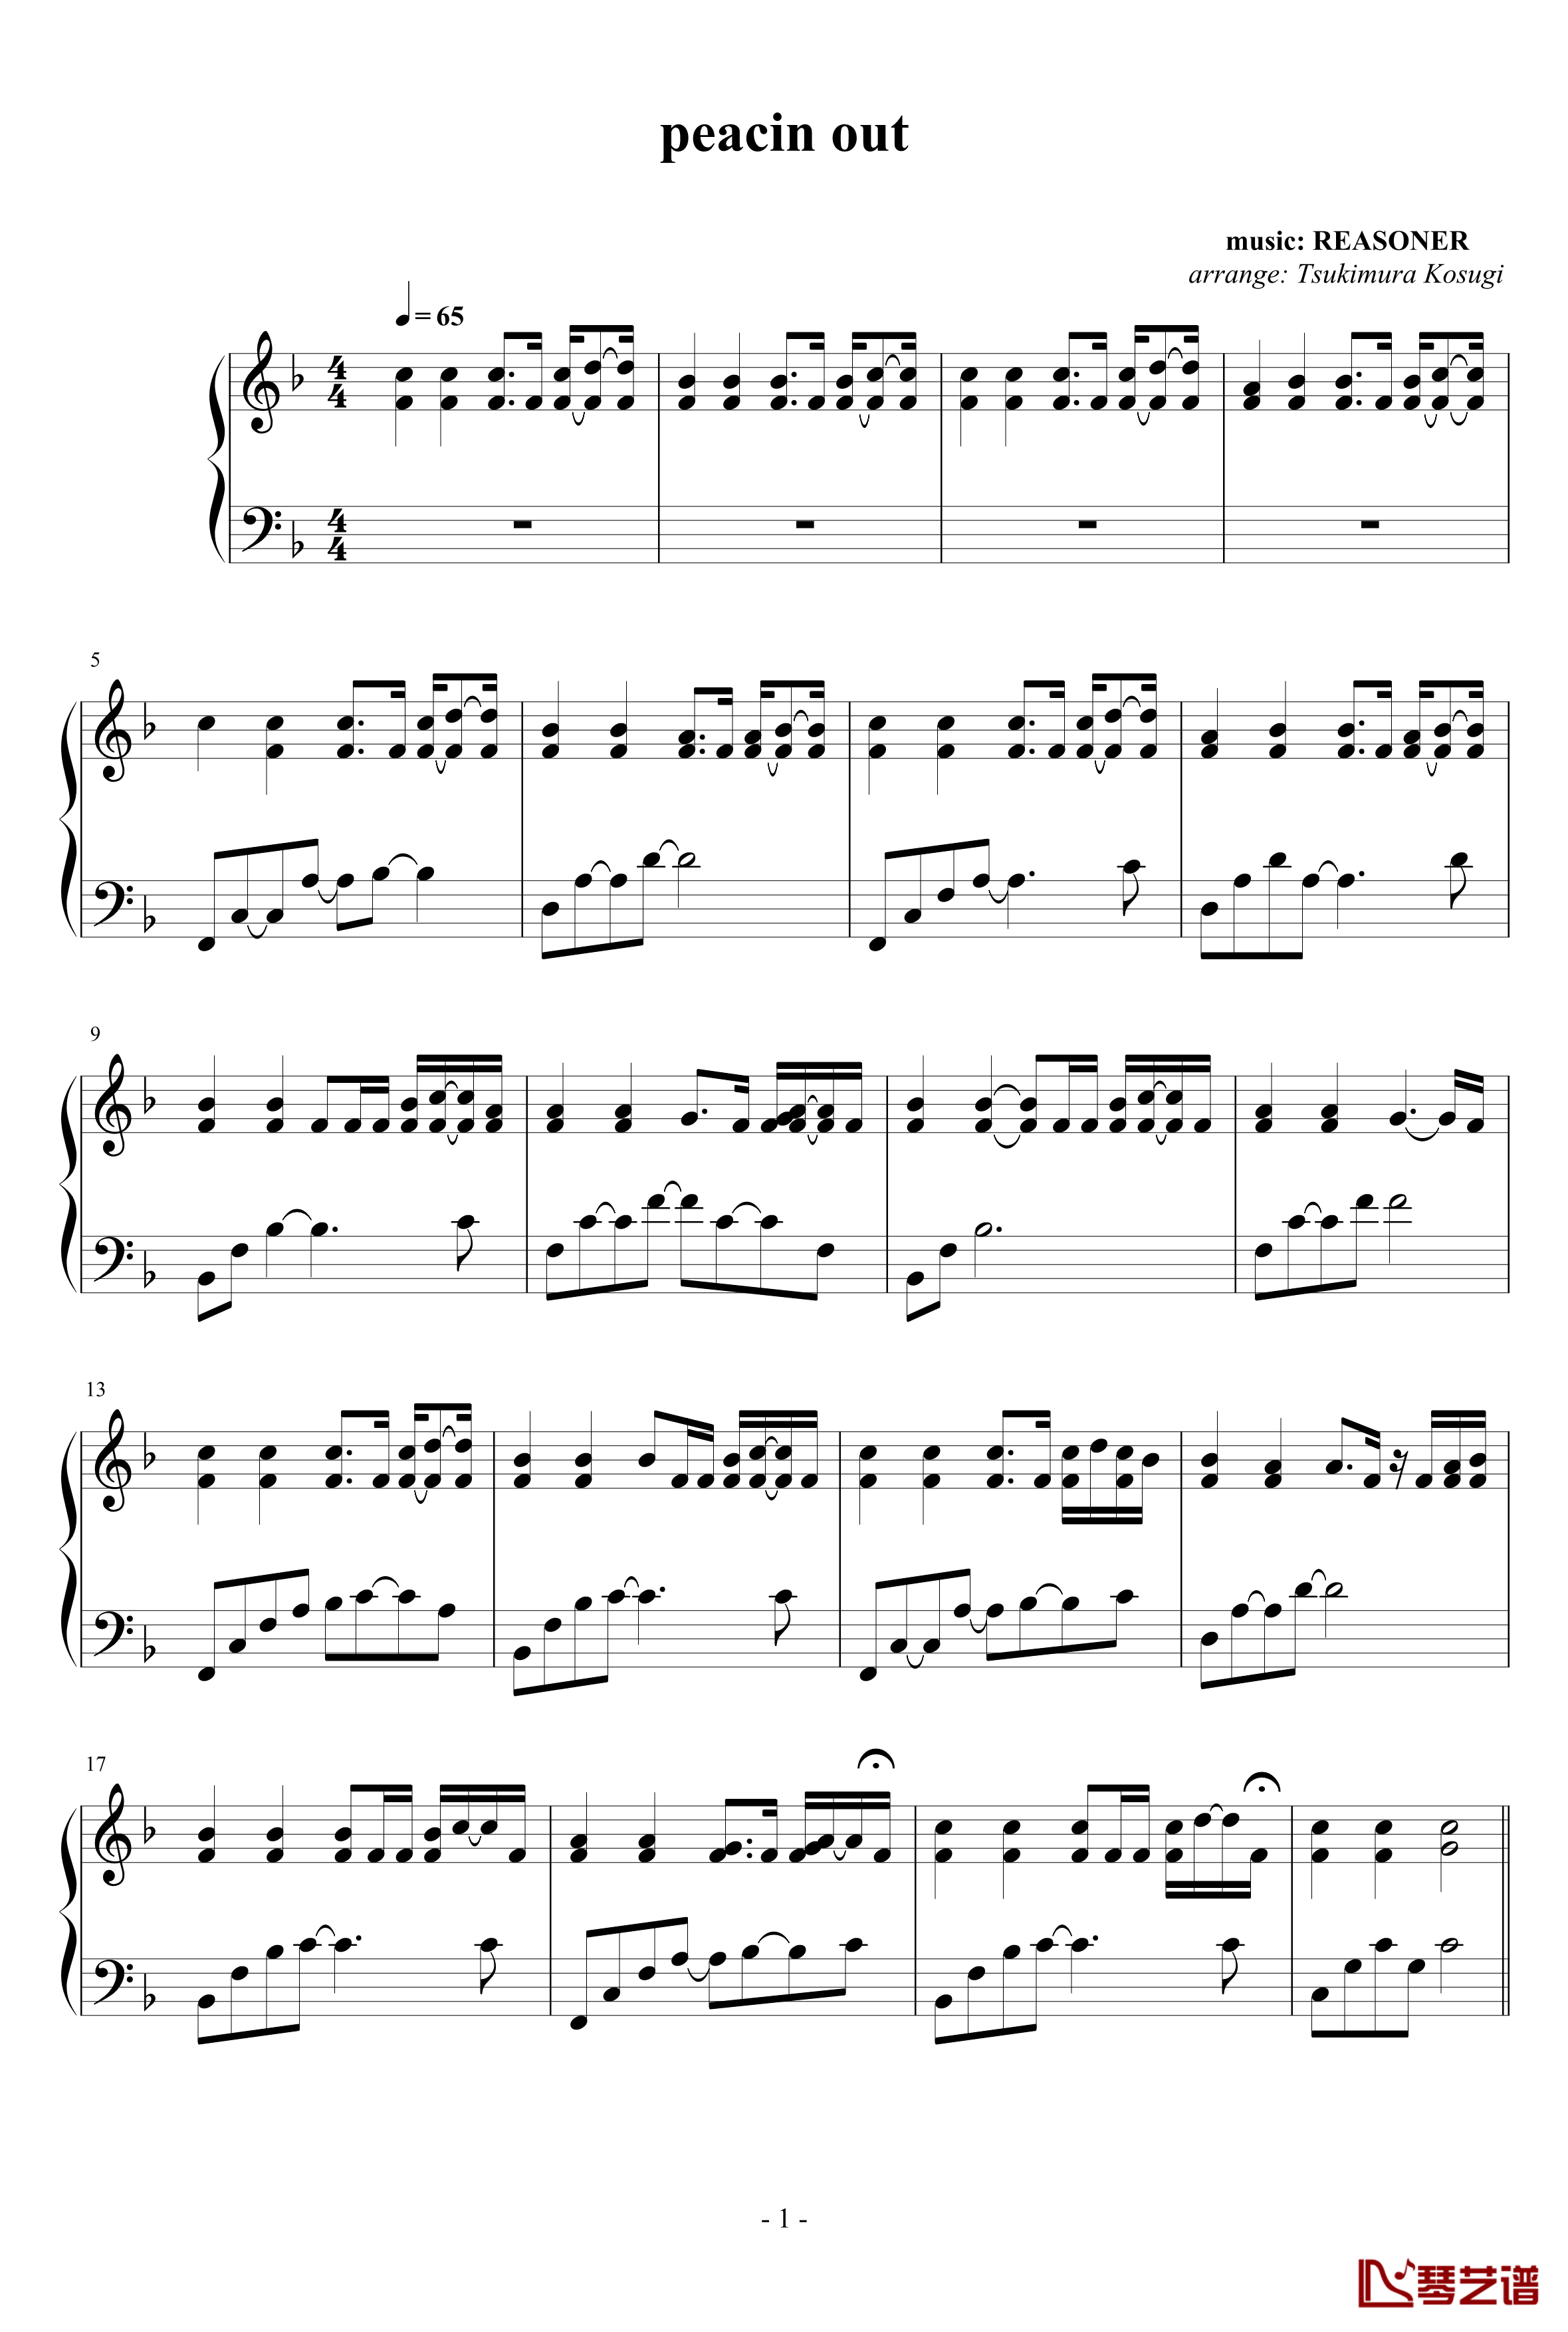 peacin out钢琴谱-REASONER